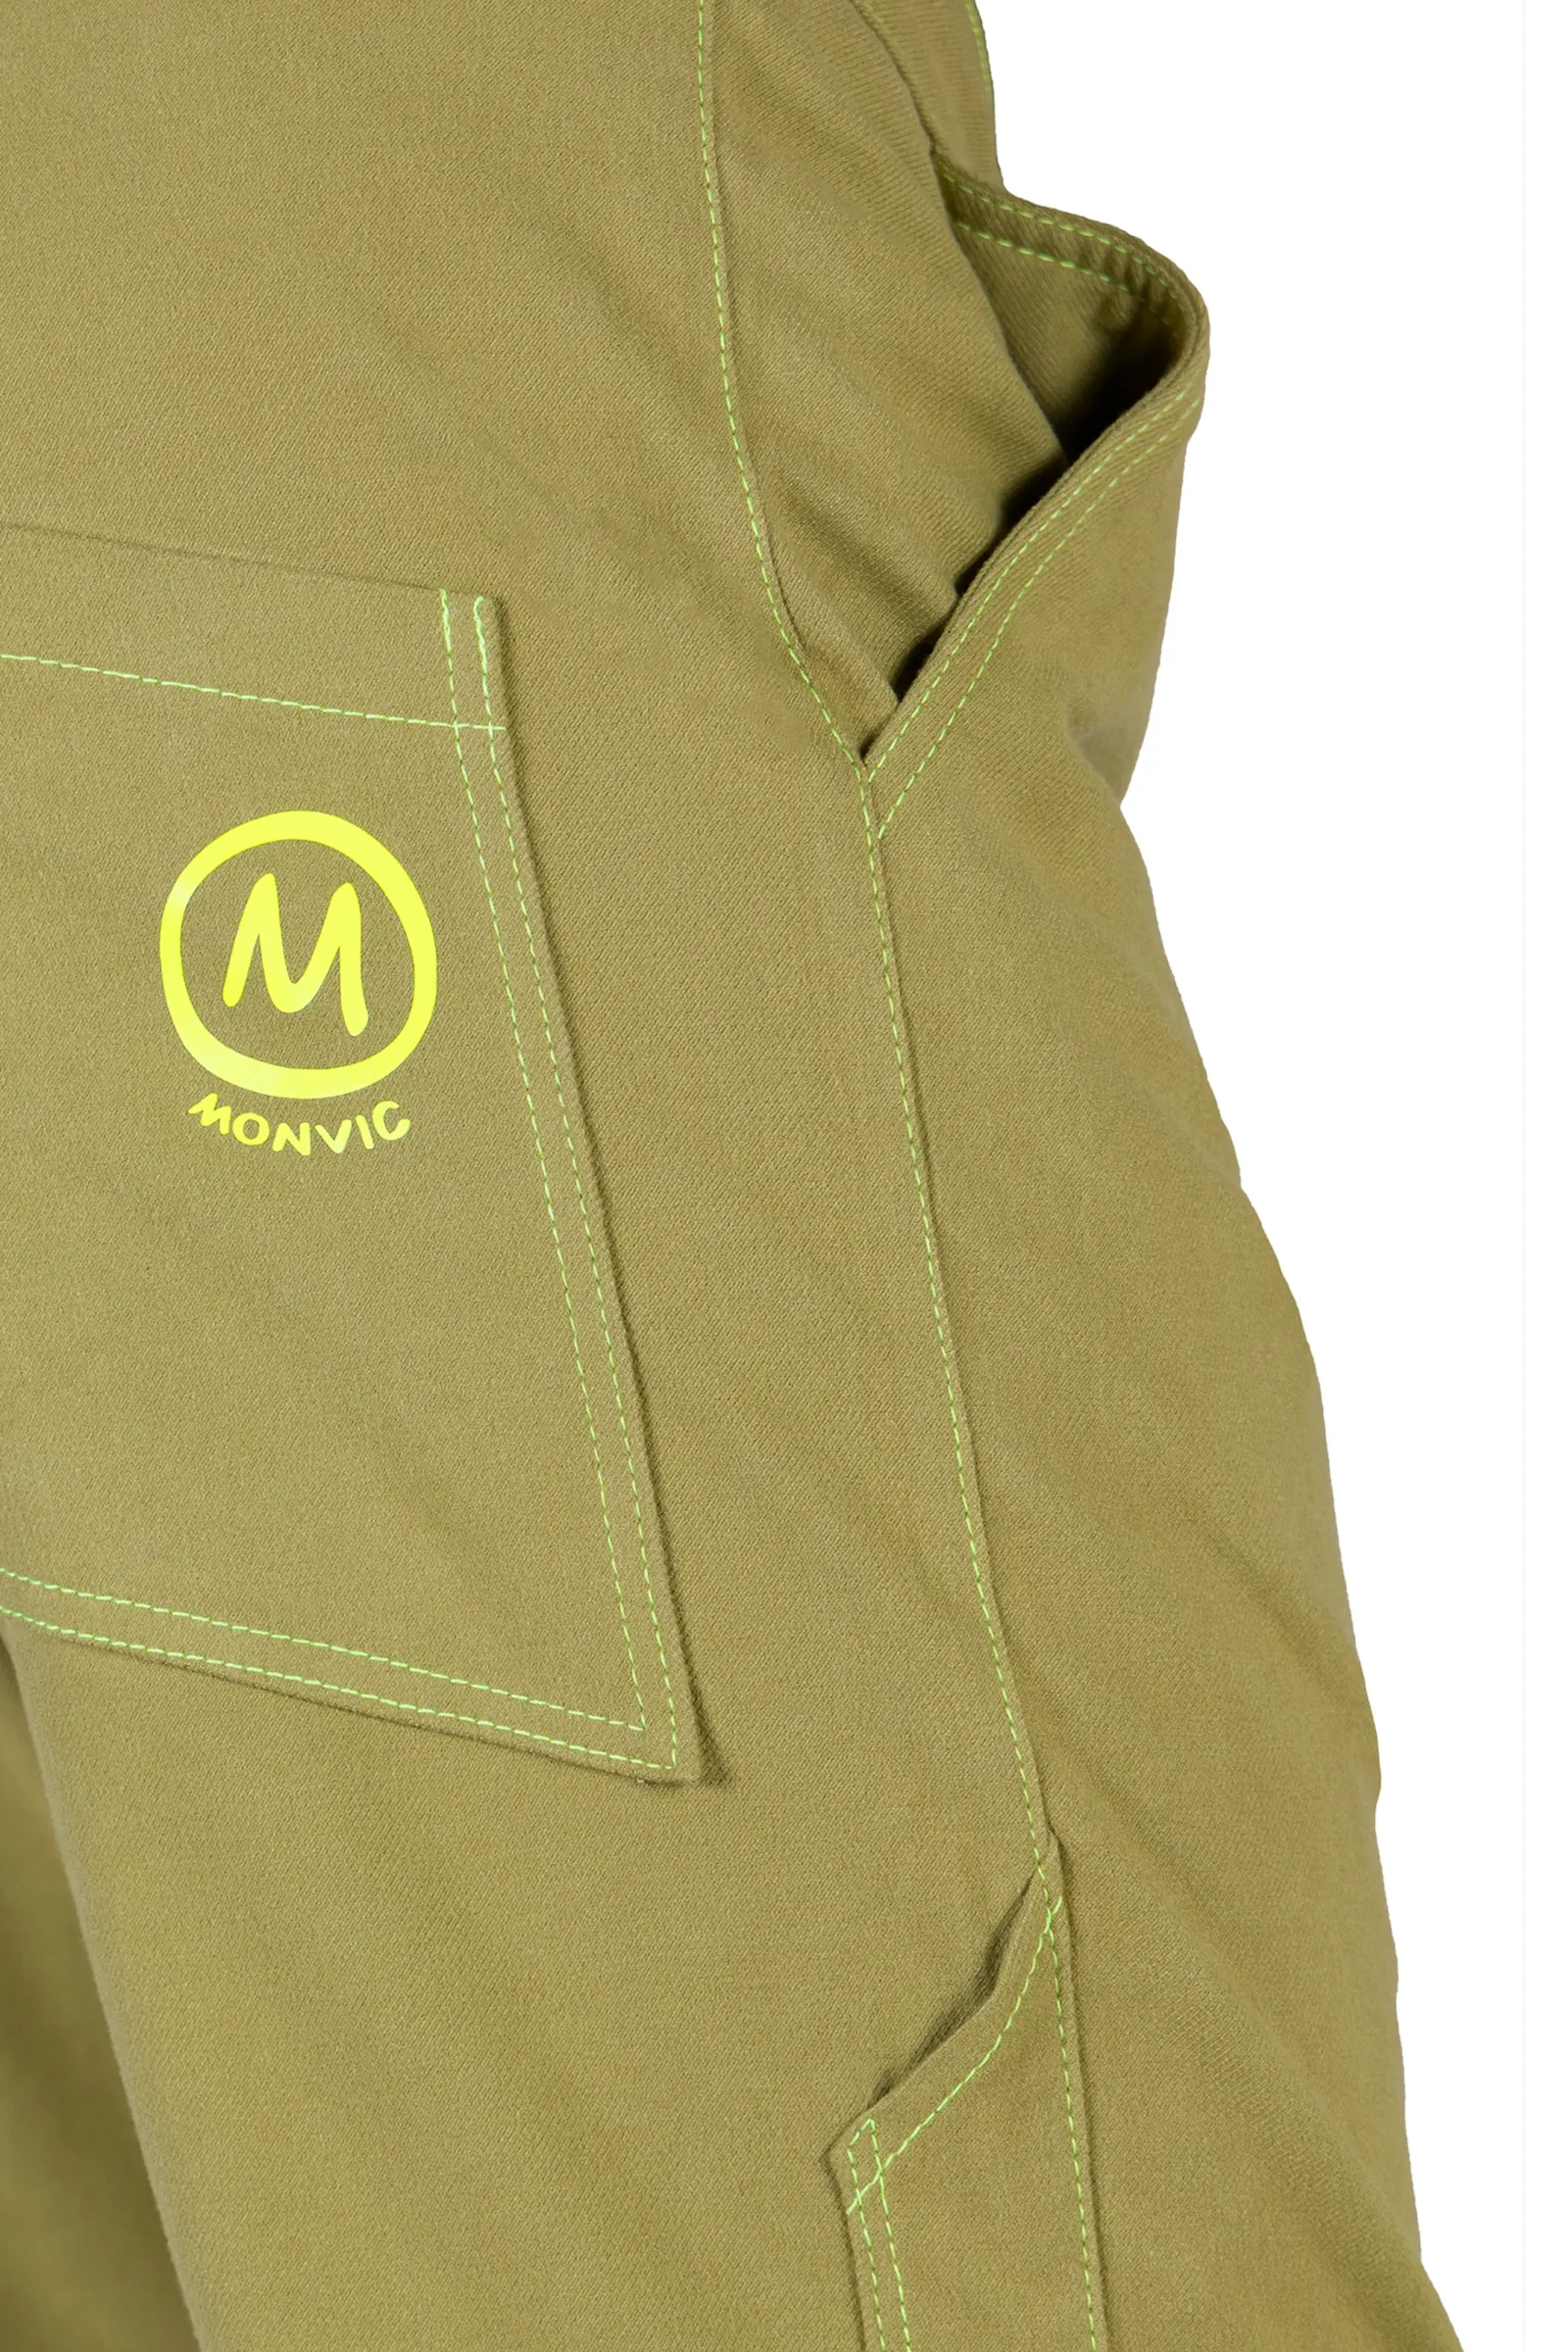 Pantalone arrampicata uomo - ultra elasticizzato - verde lime - BILLY 2 MONVIC